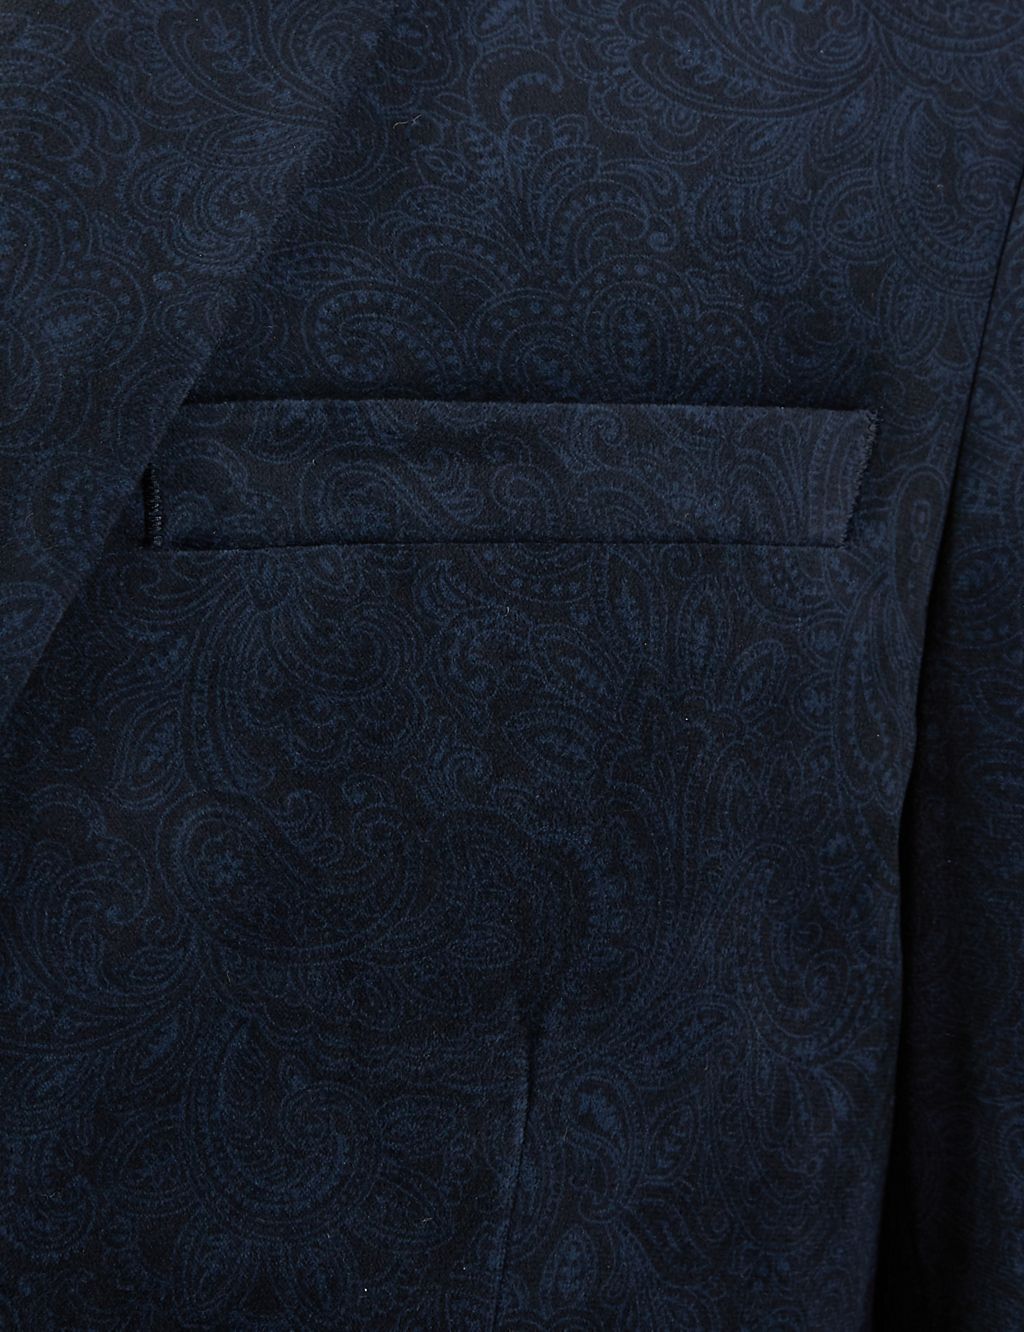 Tailored Velvet Printed Jacket 5 of 7